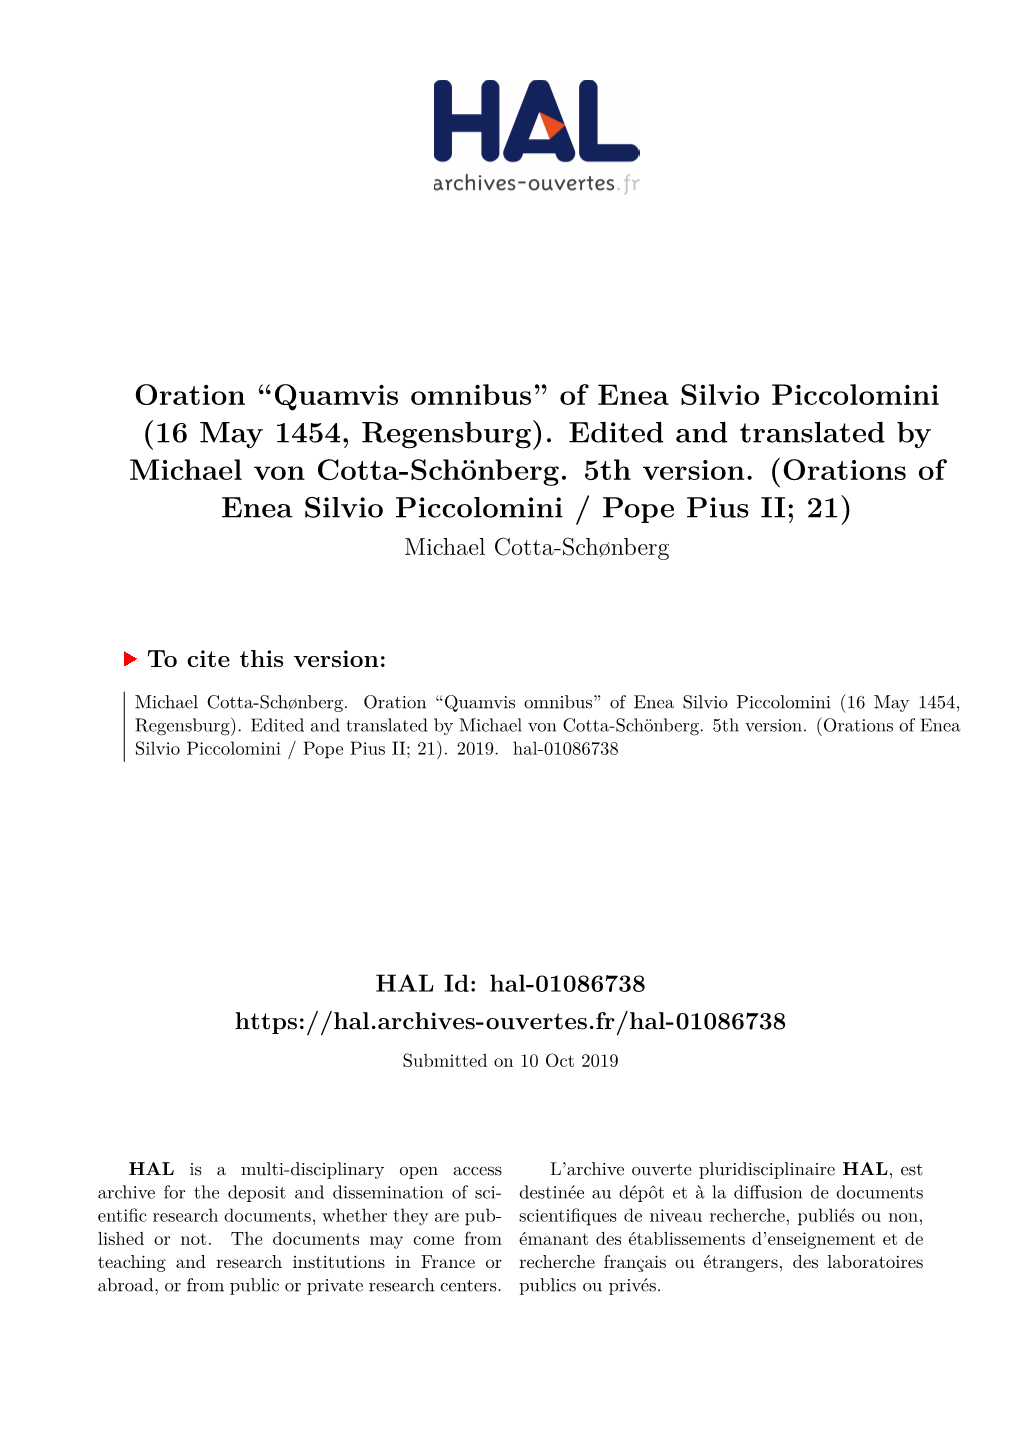 Quamvis Omnibus” of Enea Silvio Piccolomini (16 May 1454, Regensburg)